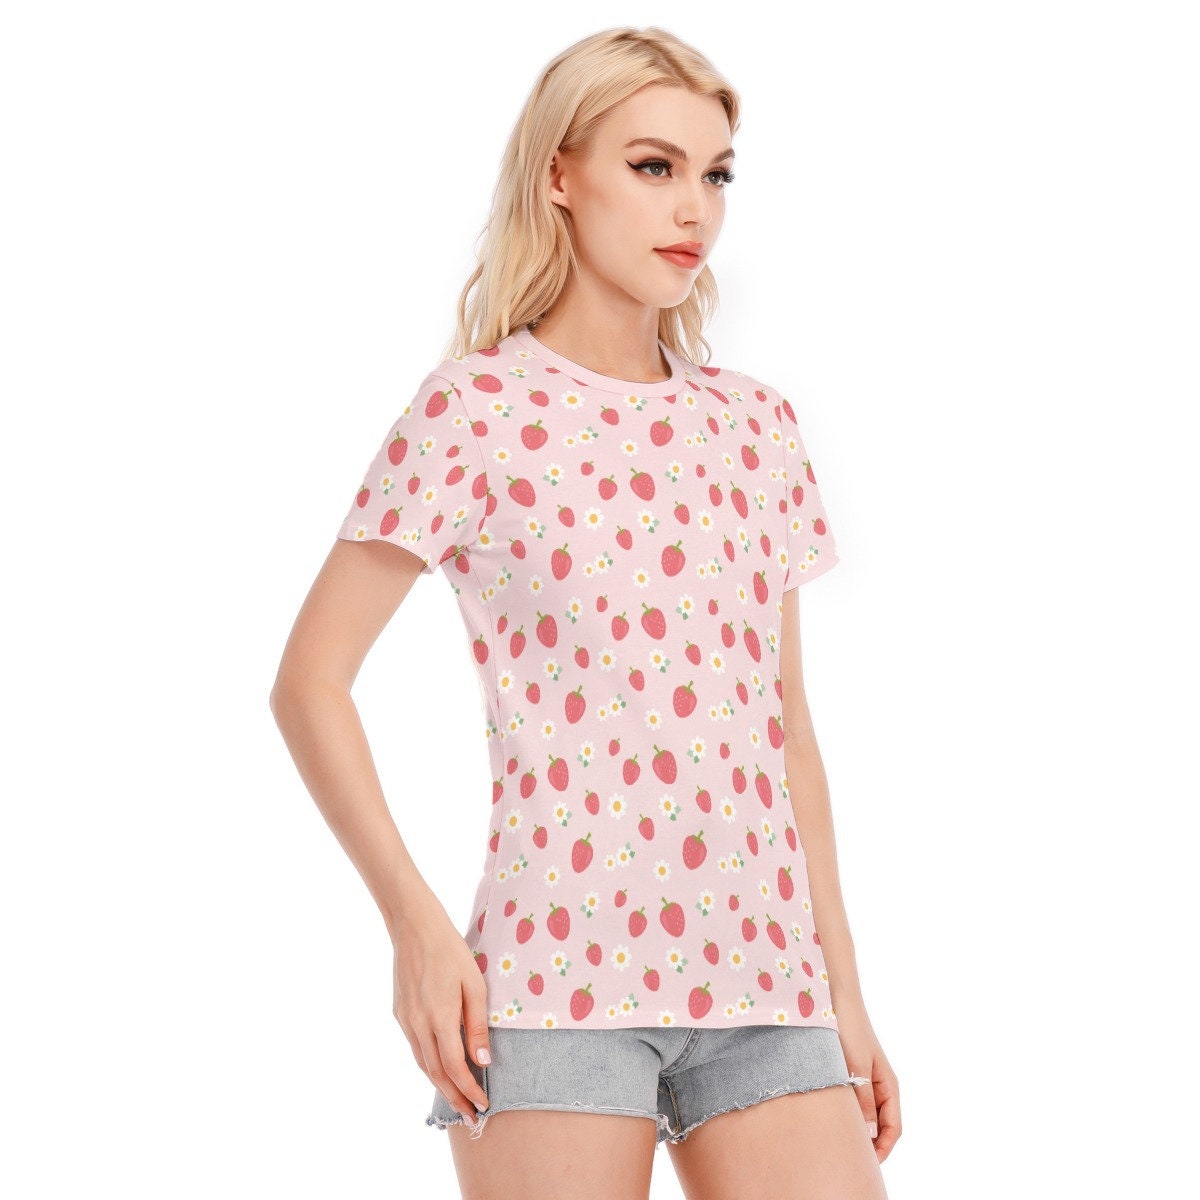 Erdbeer-T-Shirt, rosa Erdbeer-Top, Erdbeer-Print-Top, Damen-Tops, Sommer-Top für Damen, einzigartiges T-Shirt, Erdbeer-Muster-Top, rosa Top